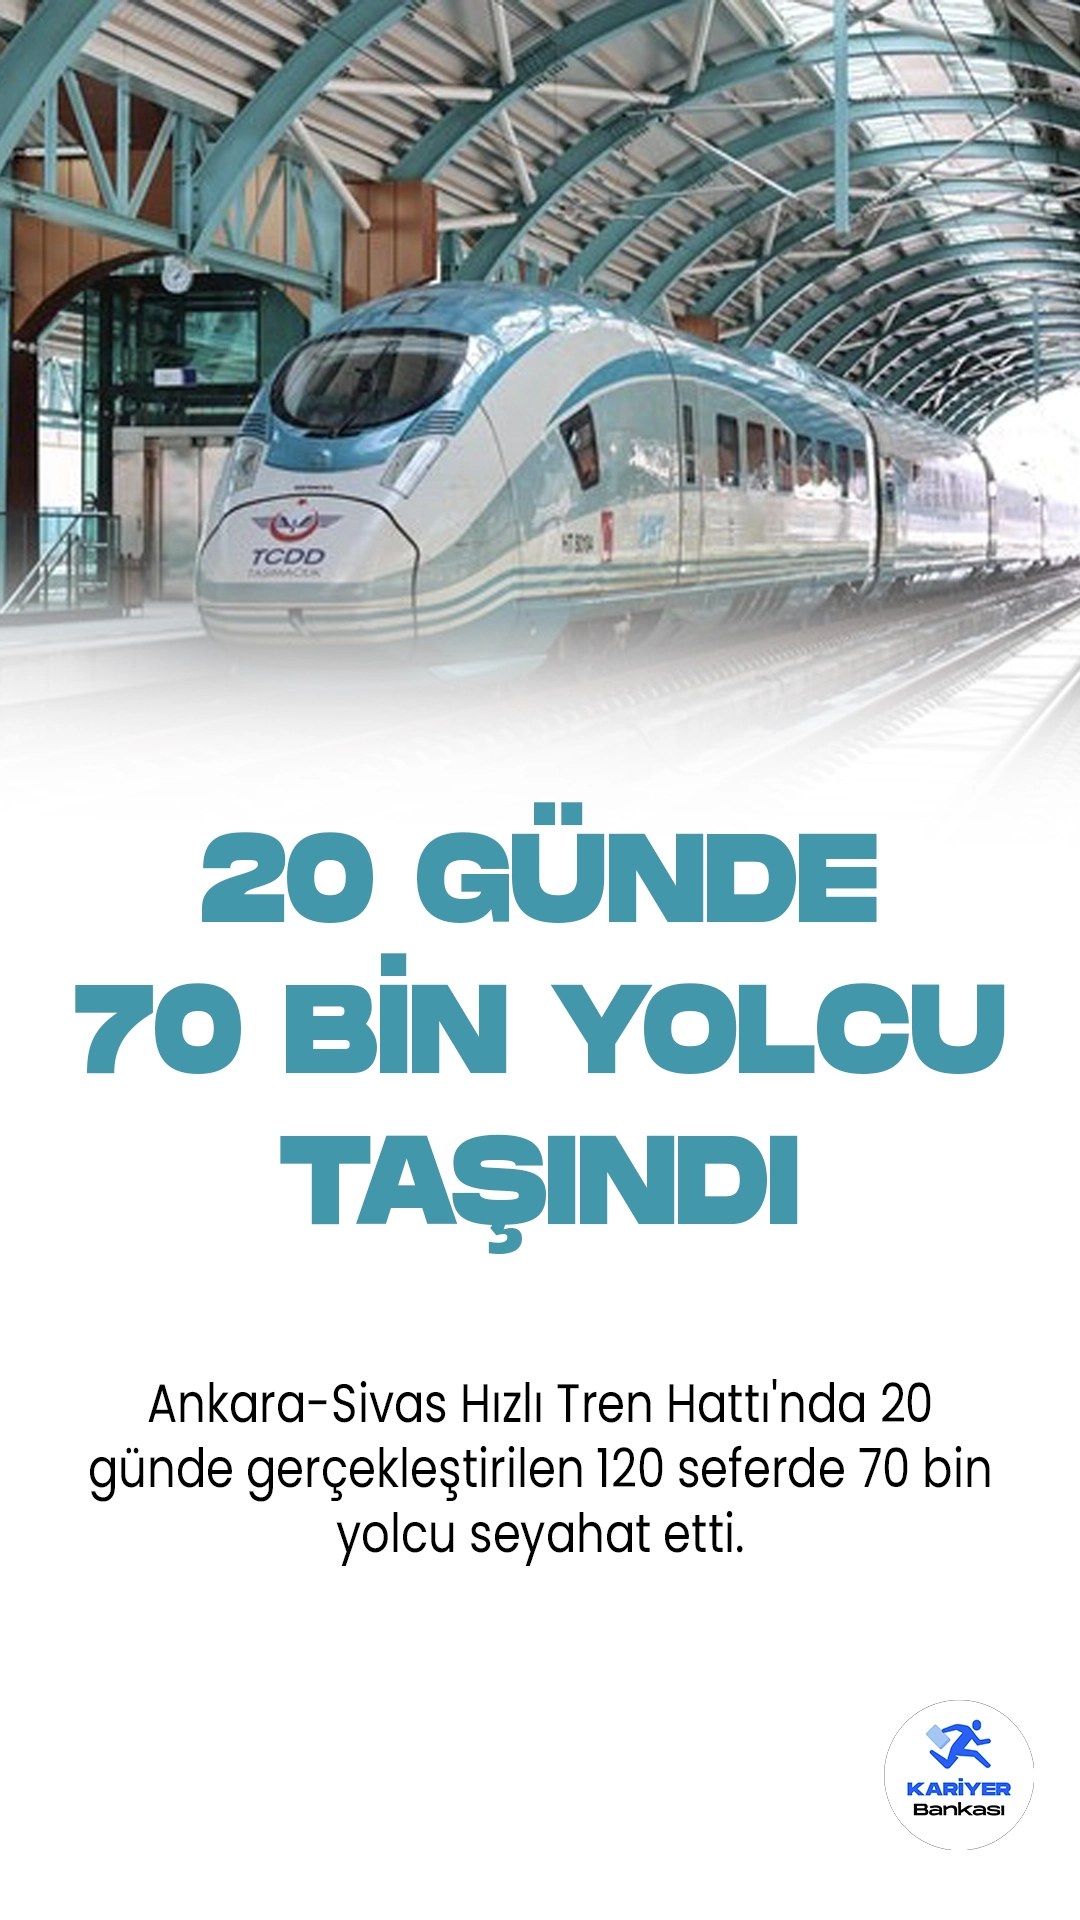 Ankara-Sivas Hızlı Tren Hattı'nda 20 günde gerçekleştirilen 120 seferde 70 bin yolcu seyahat etti.